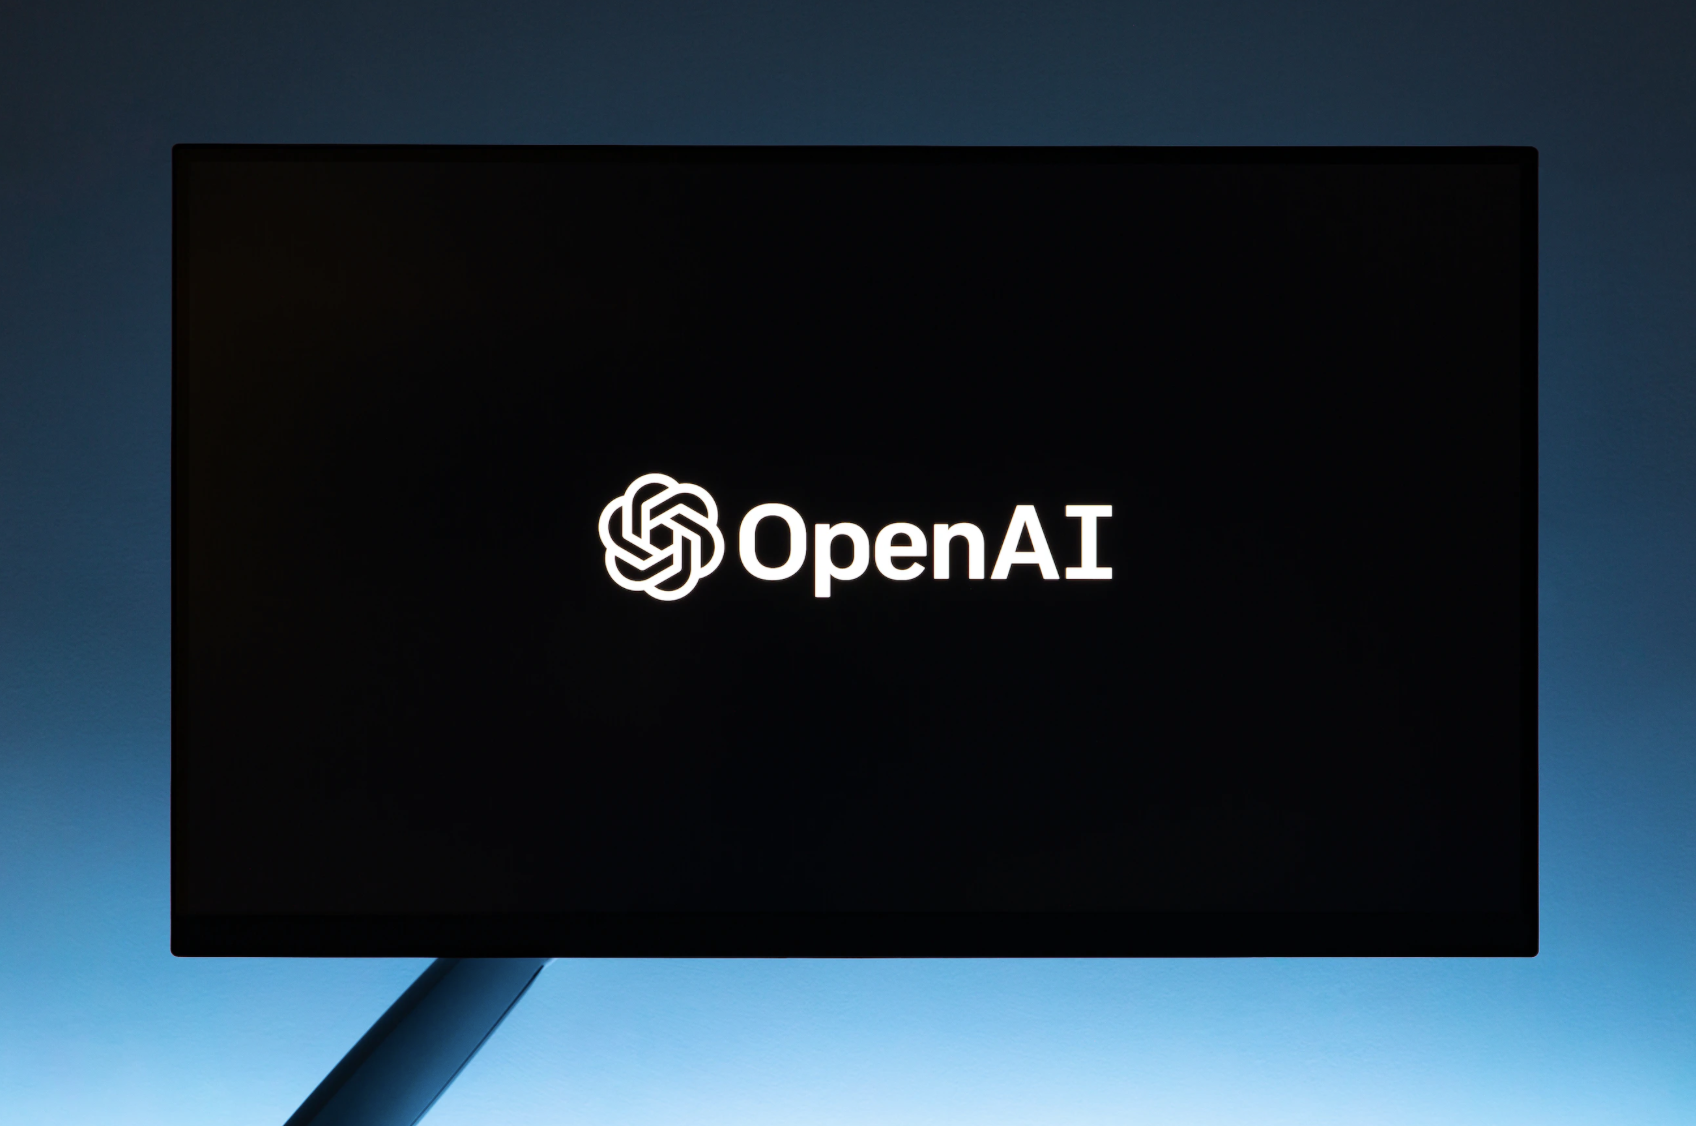 Sprawa OpenAI nabiera tempa: 707 z 770 pracowników OpenAI zagroziło przejściem do Microsoftu, jeśli zarząd nie poda się do dymisji